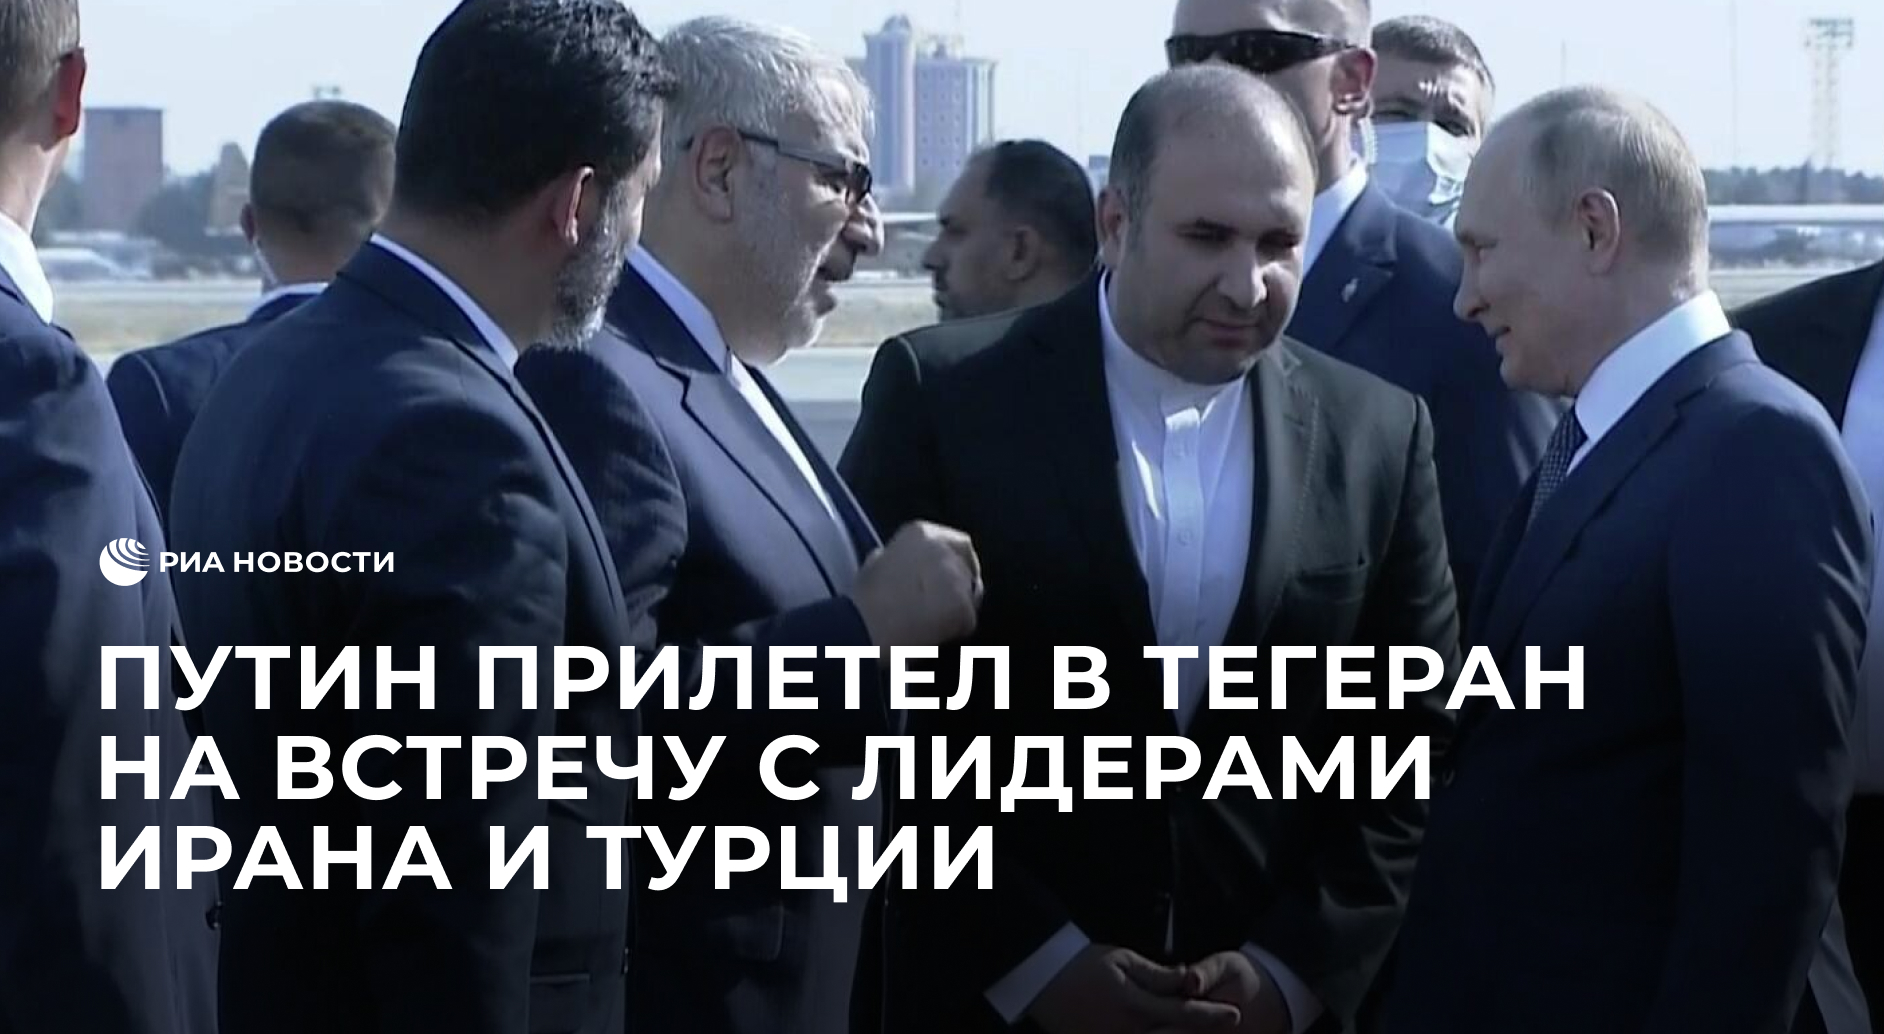 Путин прилетел в Тегеран на встречу с лидерами Ирана и Турции